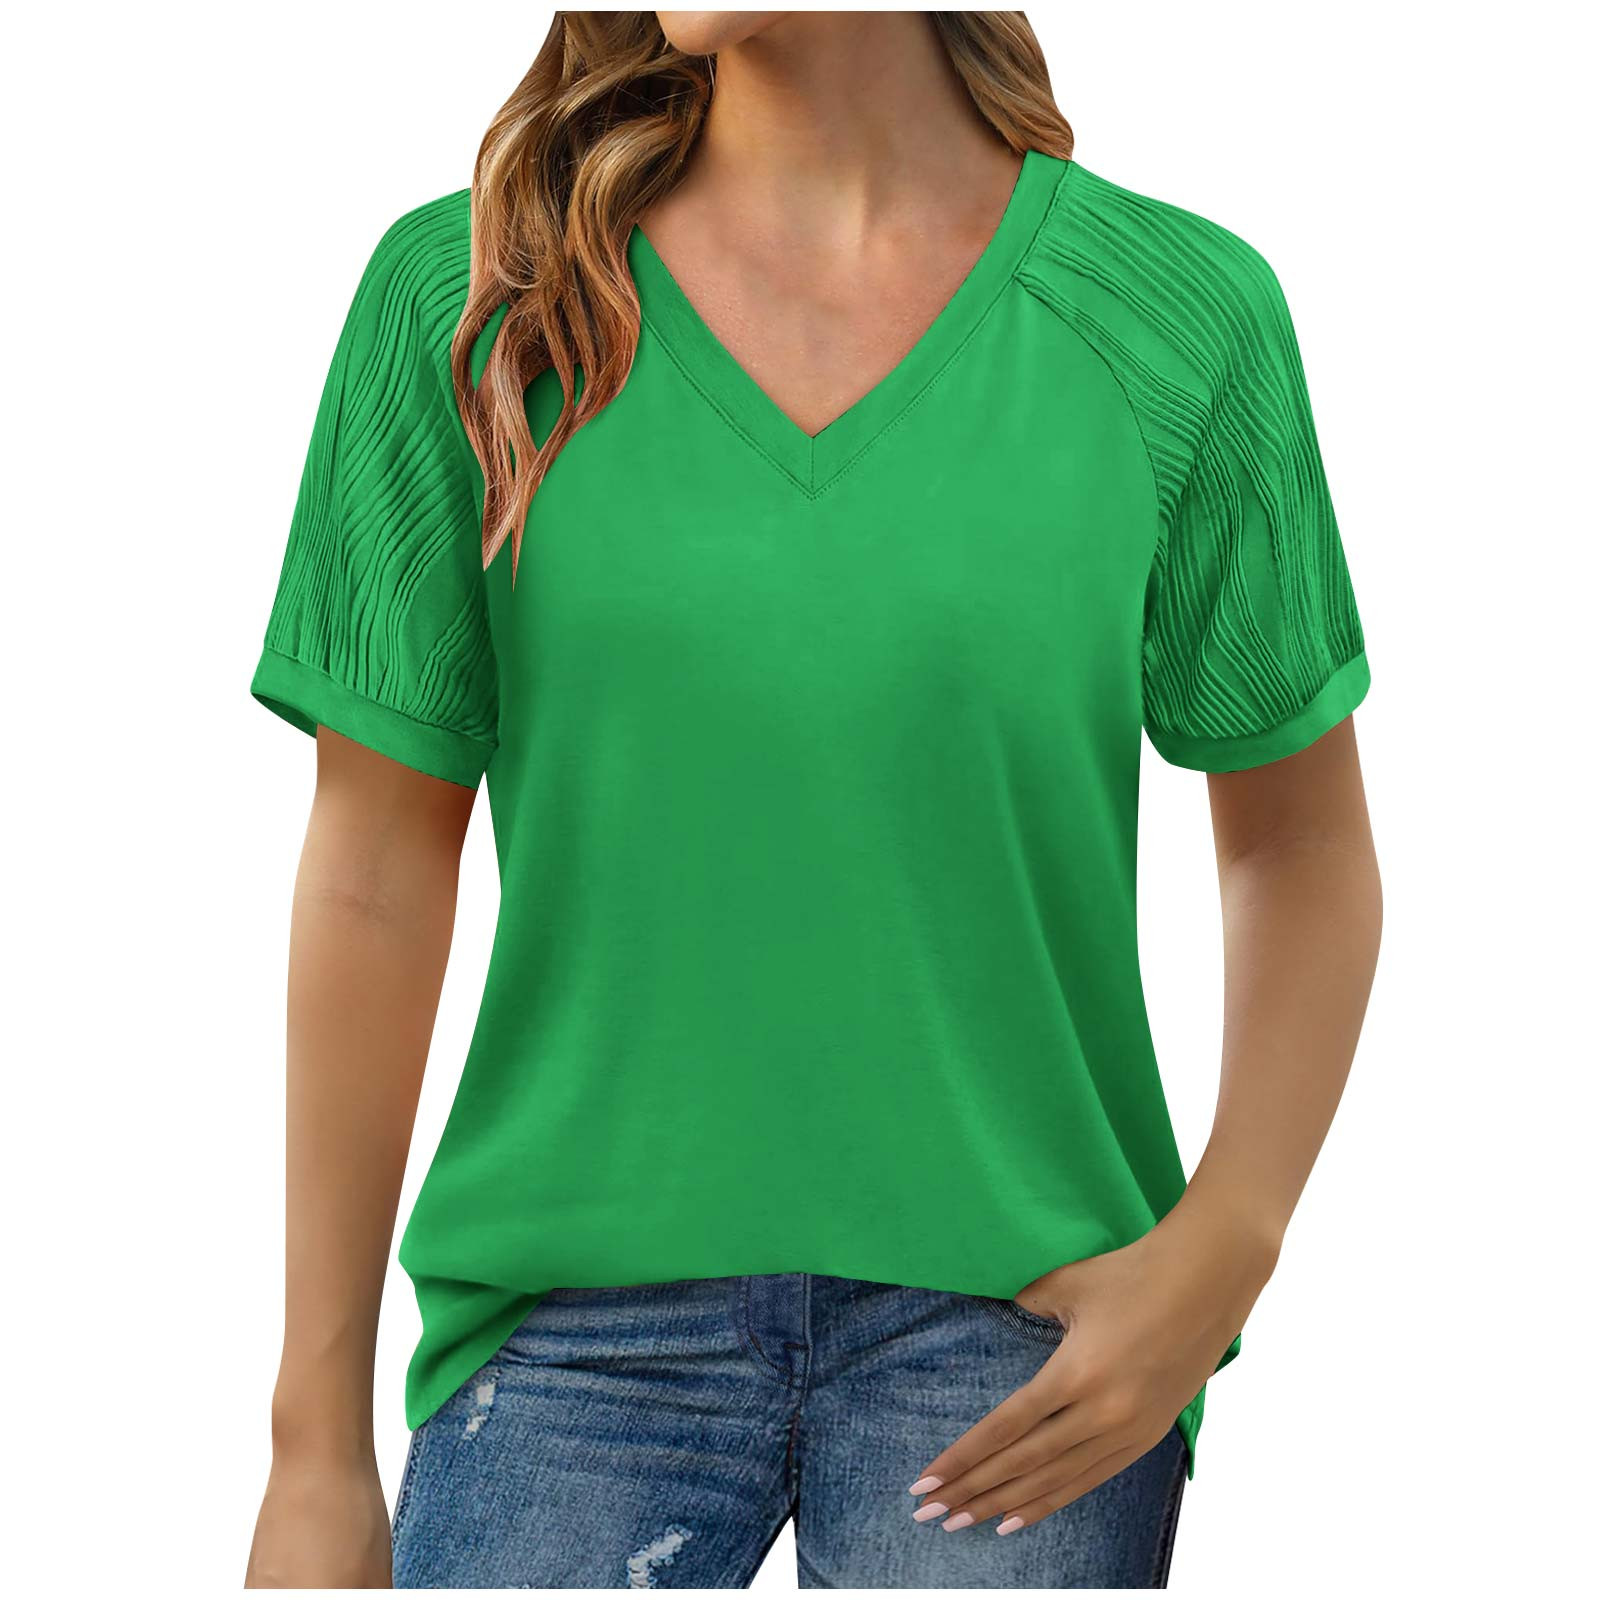 Hvyesh T-Shirts for Women V Neck Short Sleeve Tops Solid Color Hide ...